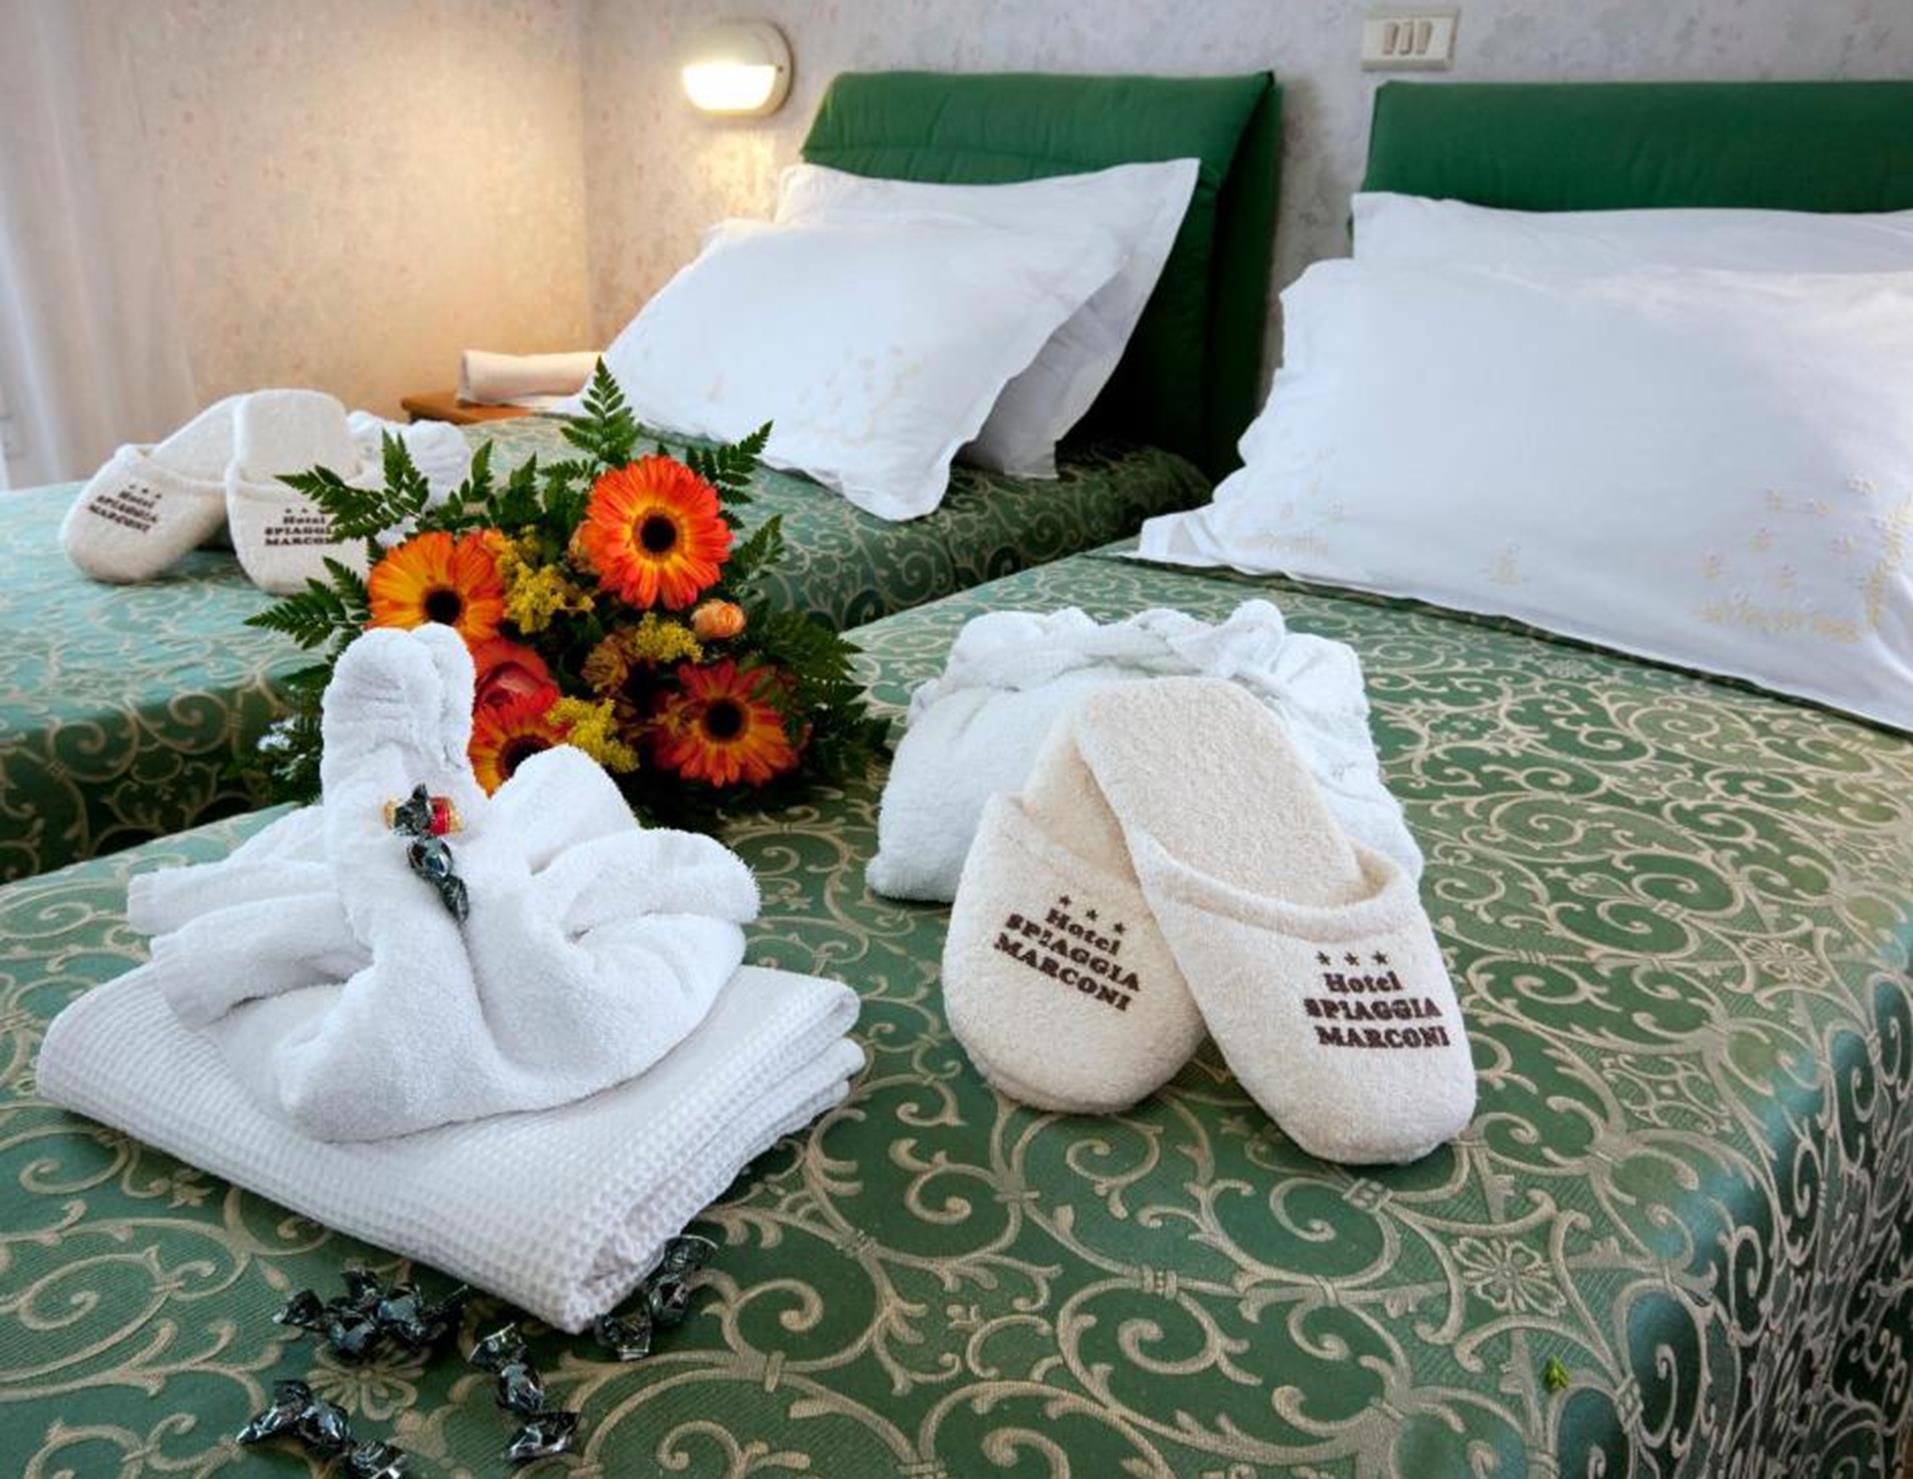 Hotel Spiaggia Marconi - Room 3